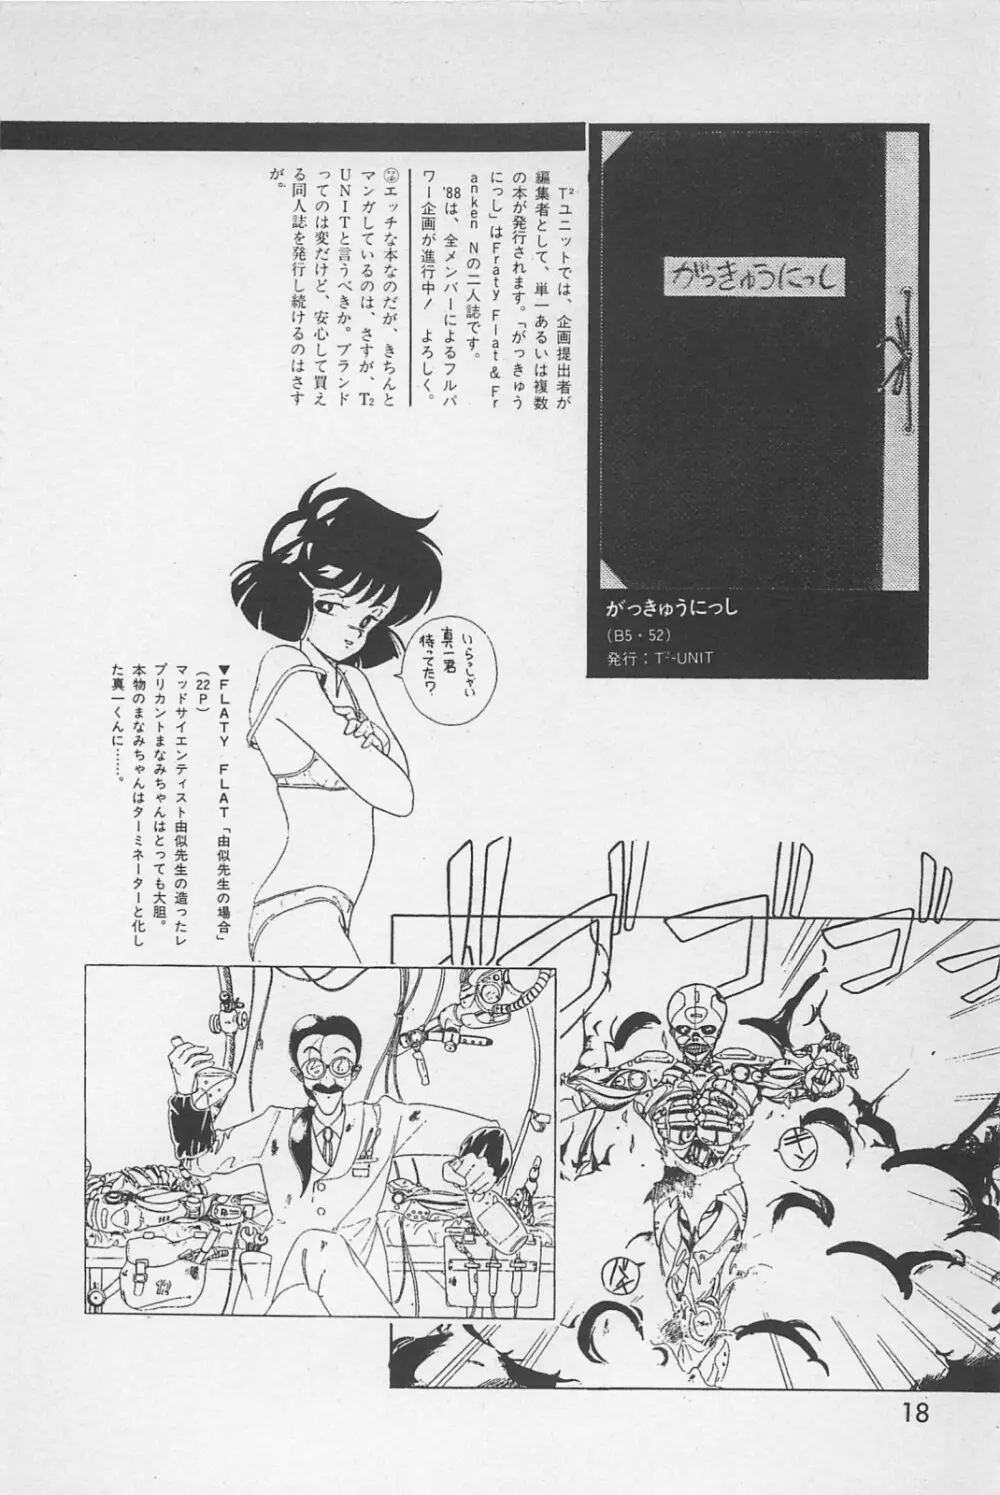 美少女症候群 1985 20ページ